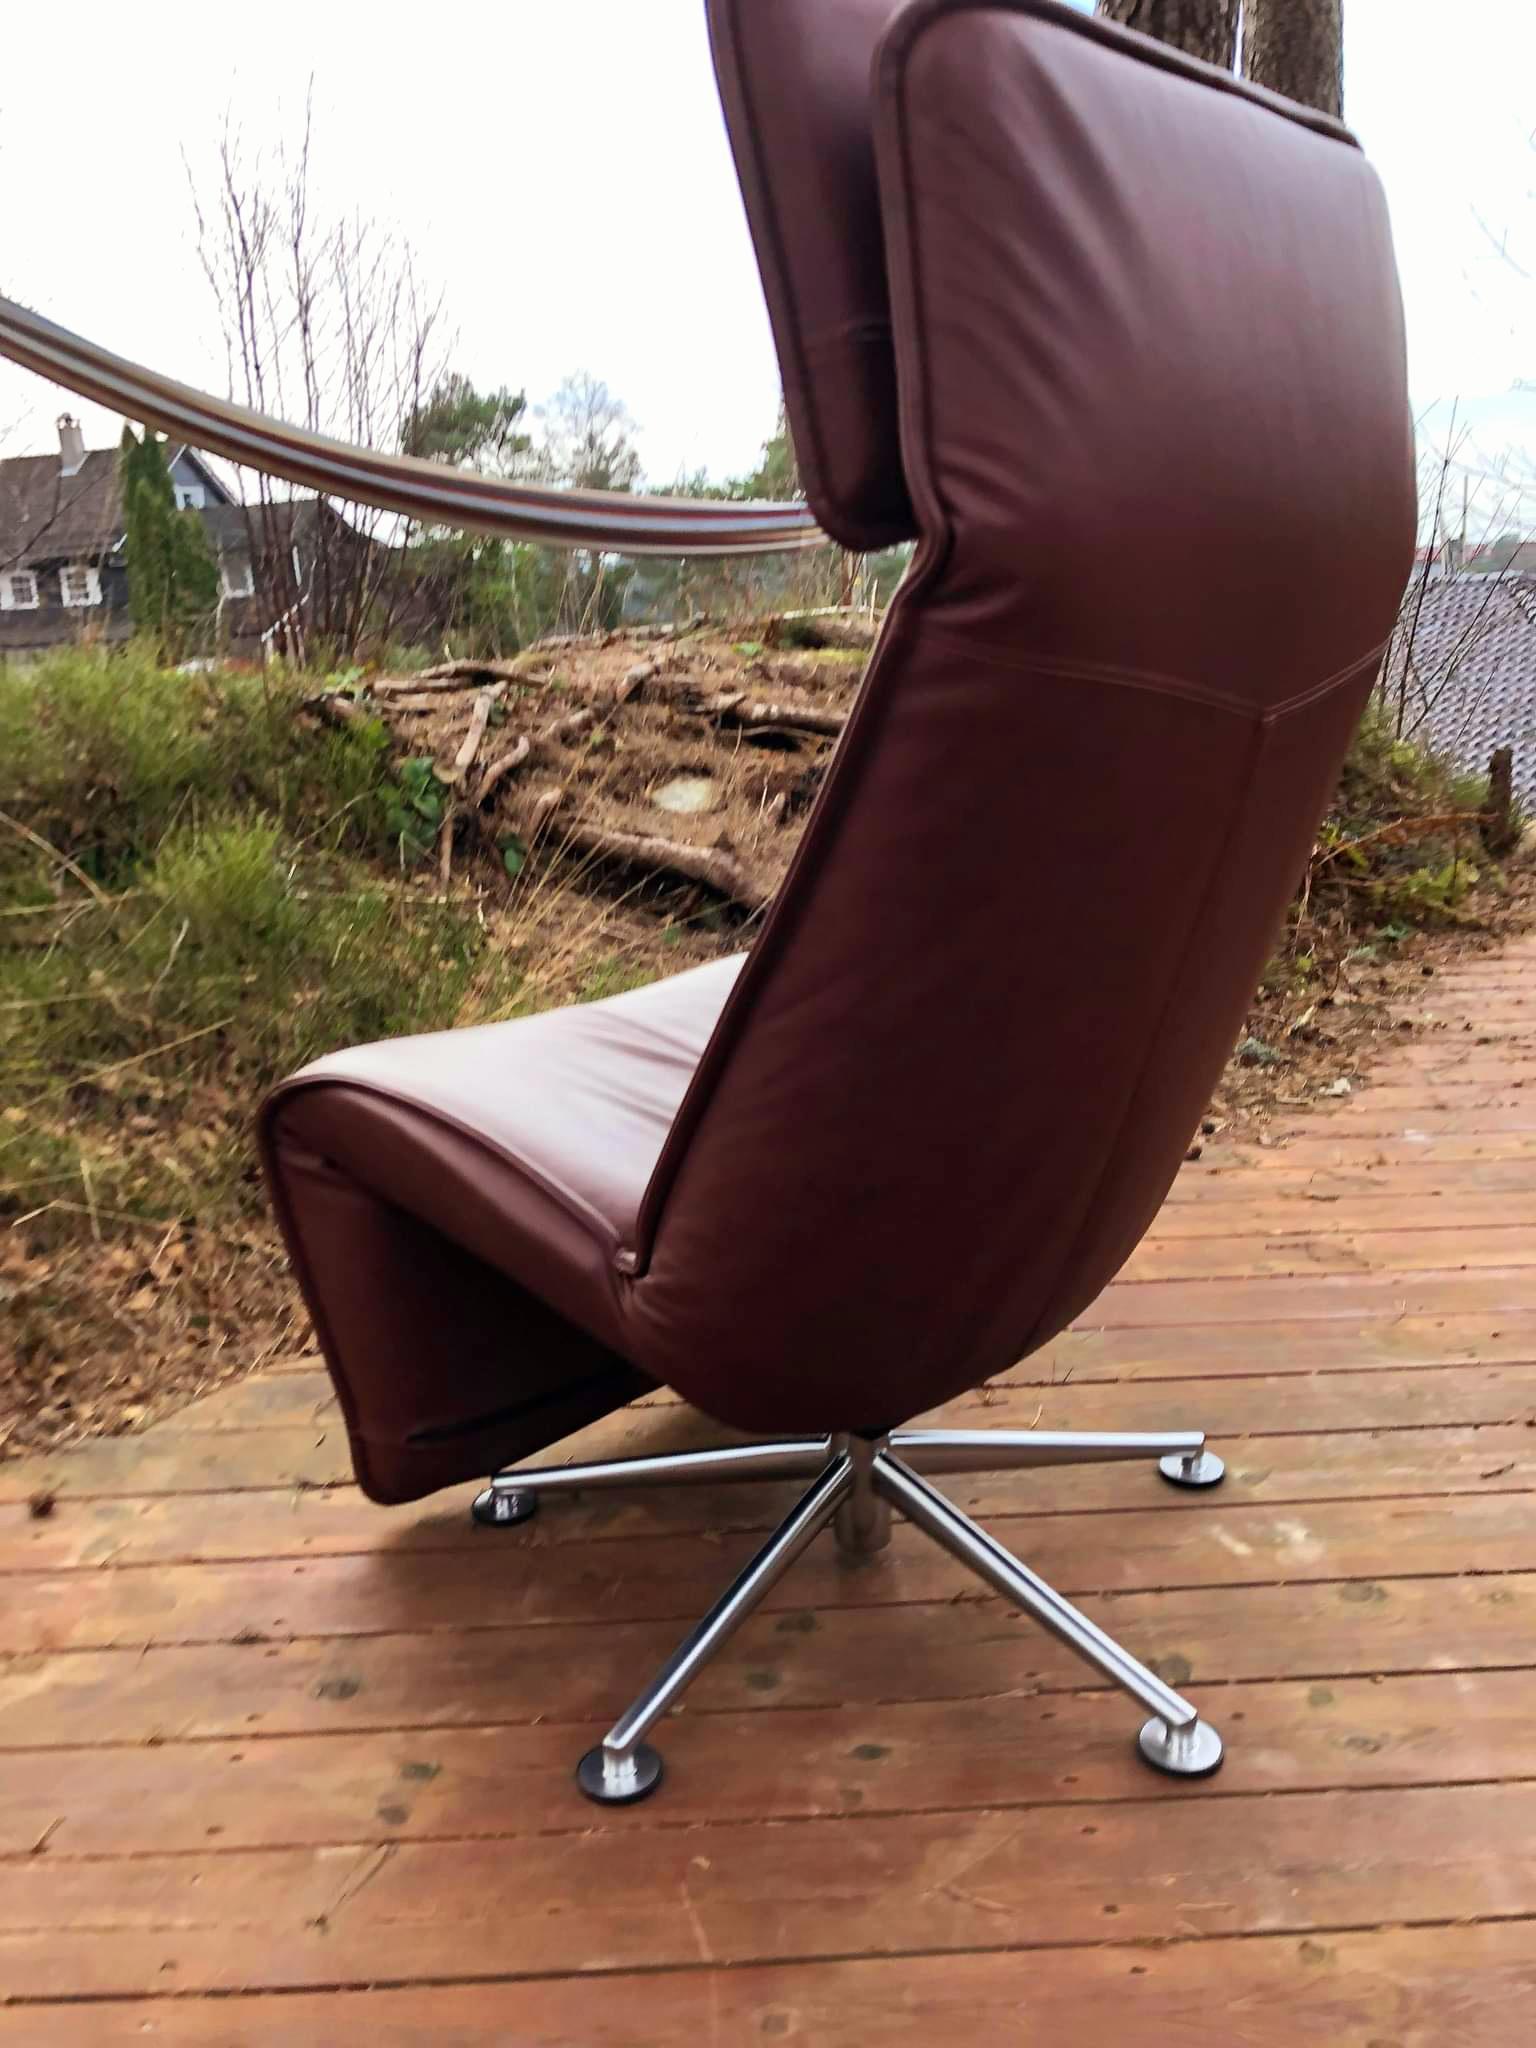 2 Sessel in whiskybraunem Leder auf Aluminiumgestell.
Die Stühle verfügen über zahlreiche Einstellmöglichkeiten, wie z. B. eine Rückenlehne, eine Nackenlehne und ein verstellbares Nackenkissen.
Kann sich um 360 Grad drehen, so dass man sich wie auf